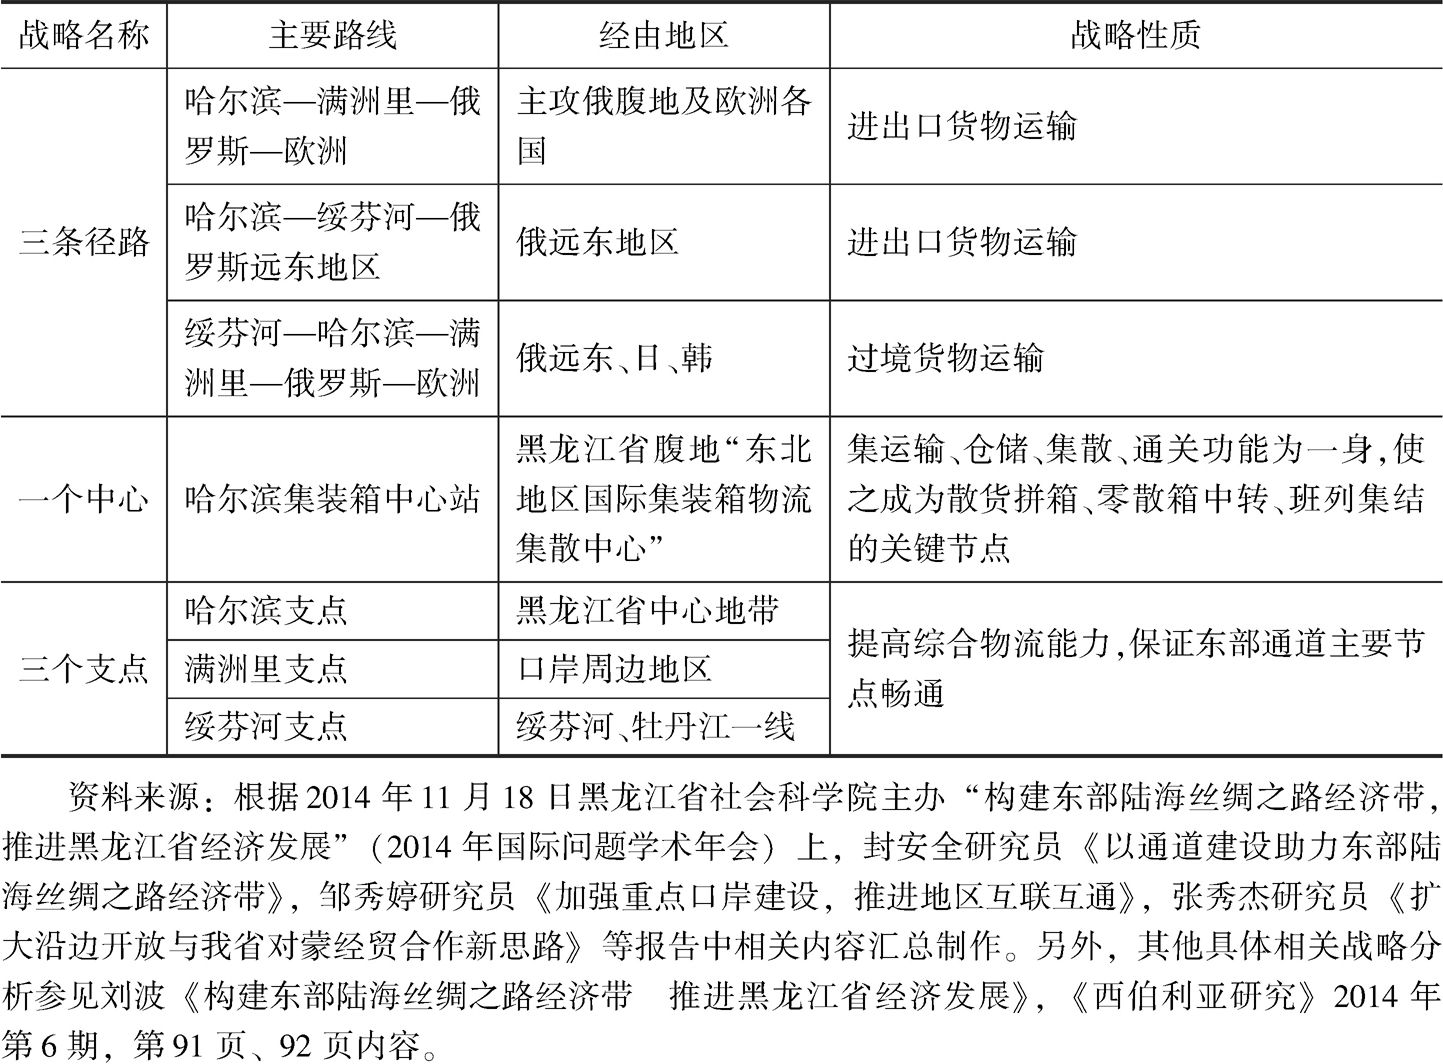 表3 黑龙江省构建“东部陆海丝绸之路经济带”工作方向及重点